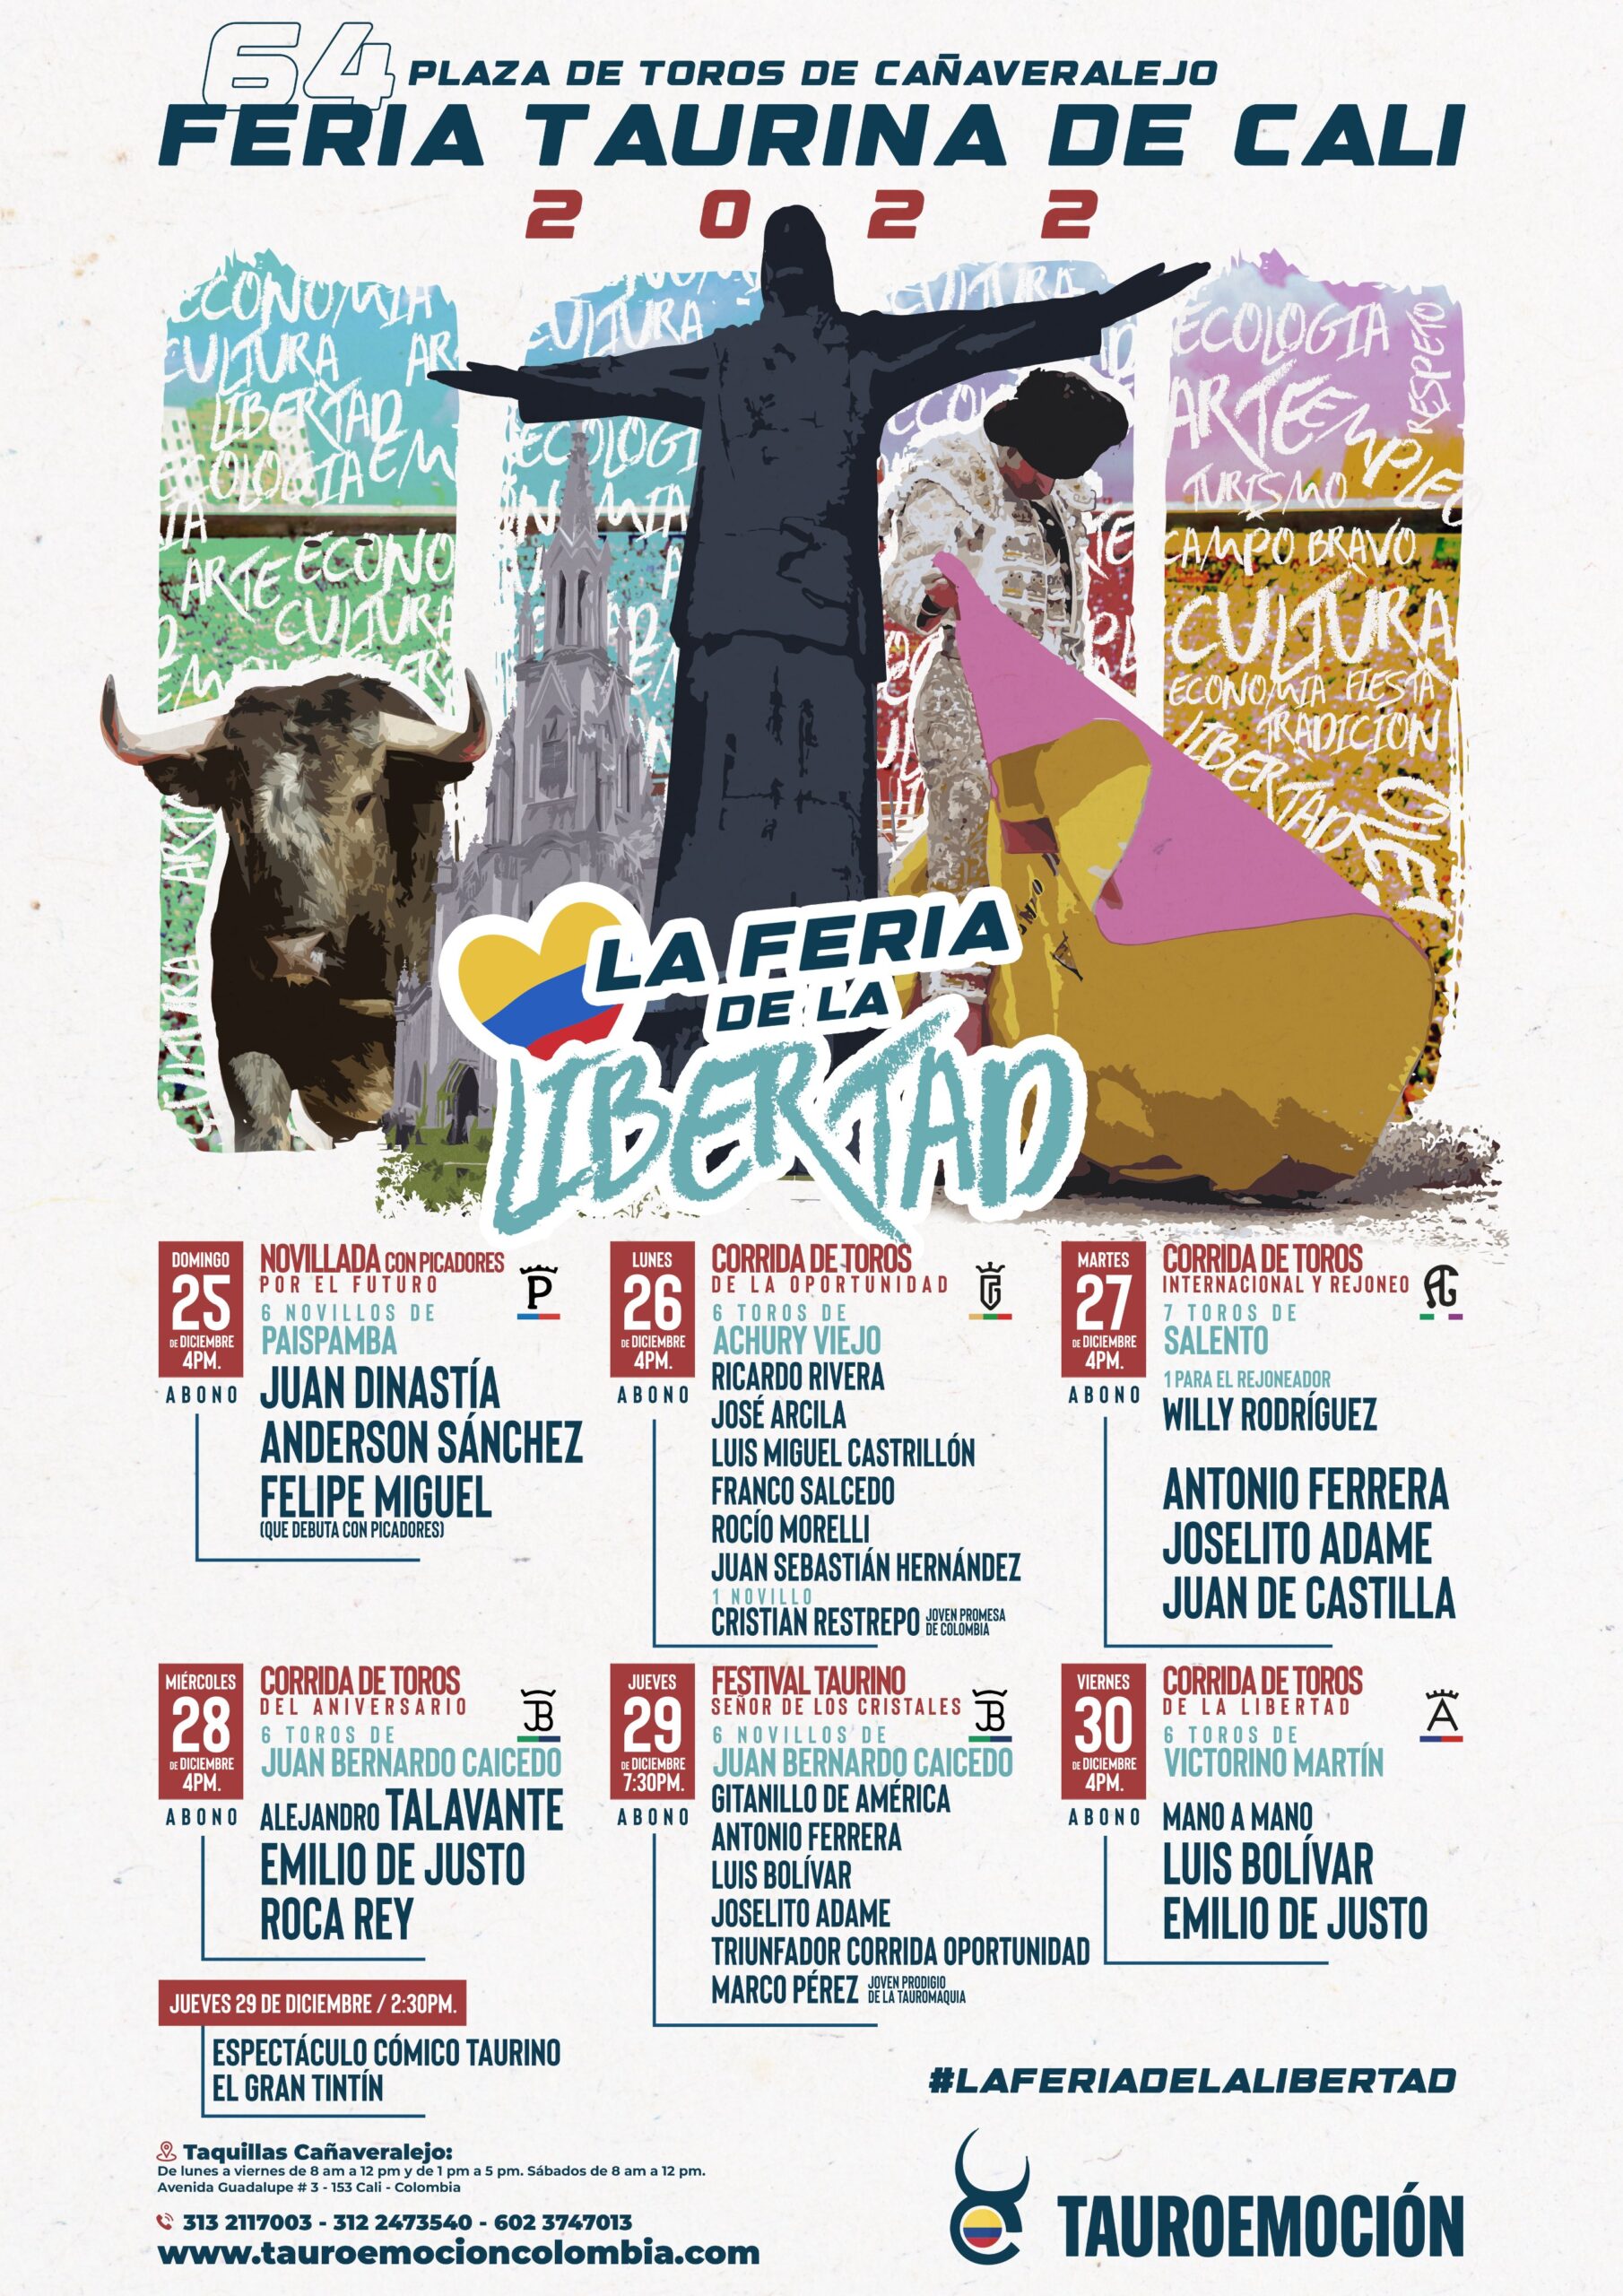 Tauroemoción Colombia presenta una Feria Taurina de Cali de altísimo